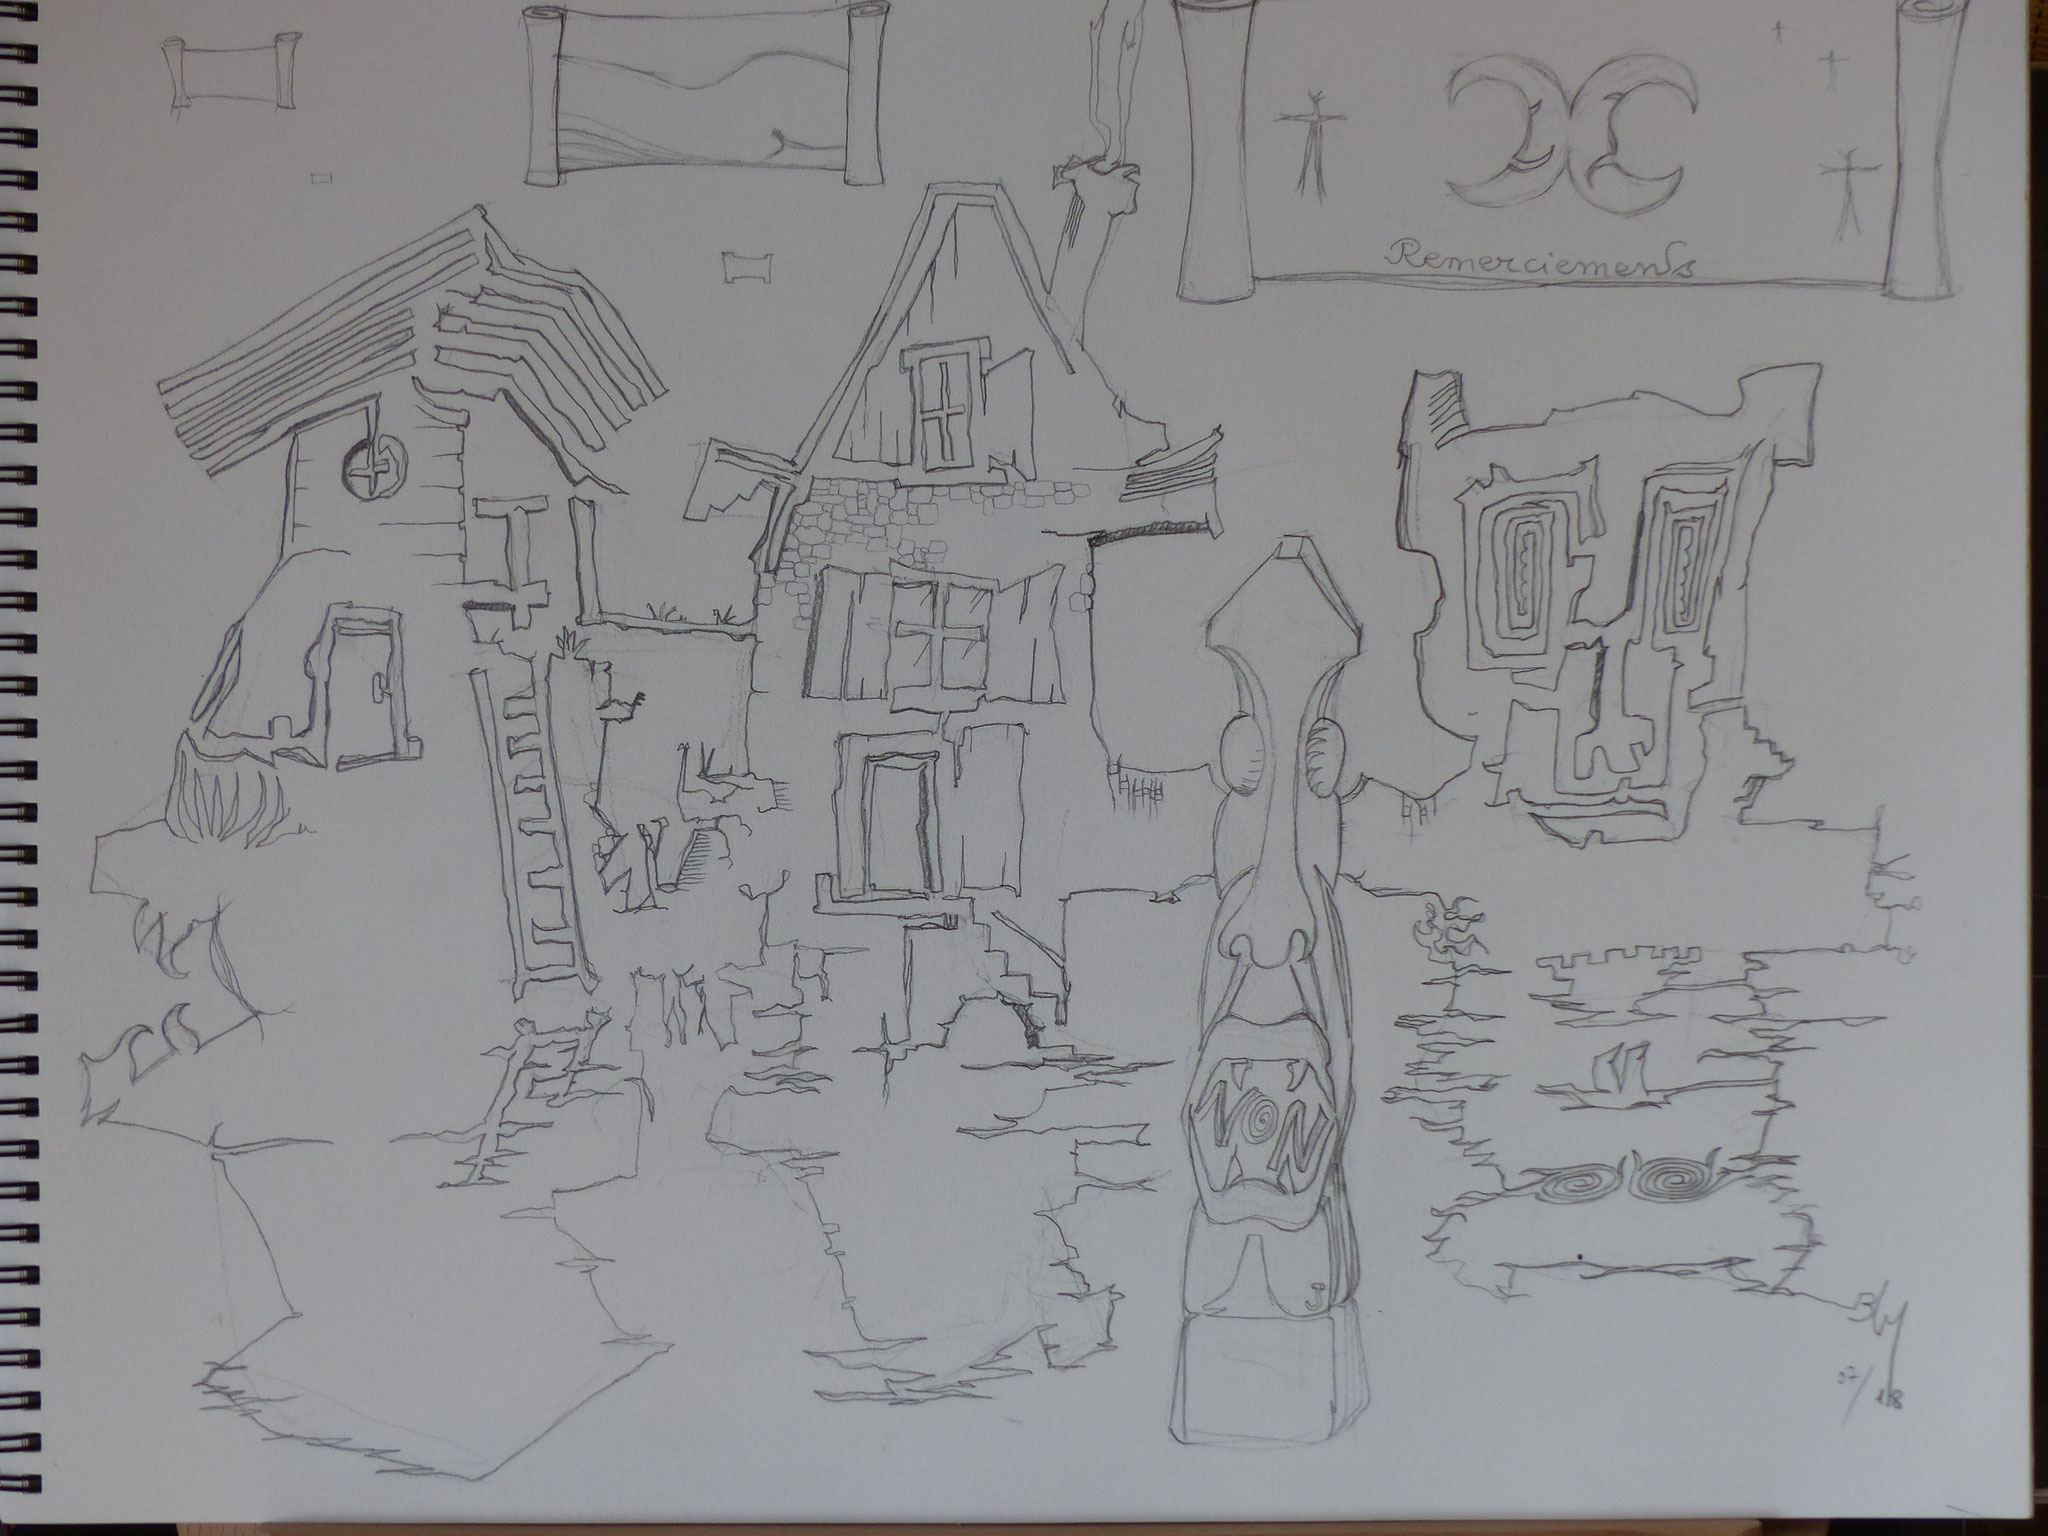 Deux maisons et une tronche au bord d'un lac. Par rapport au dessin de "En Boucle" page 24, j'ai rajouté le totem, reprise de mon couteau réalisé par jeremy.